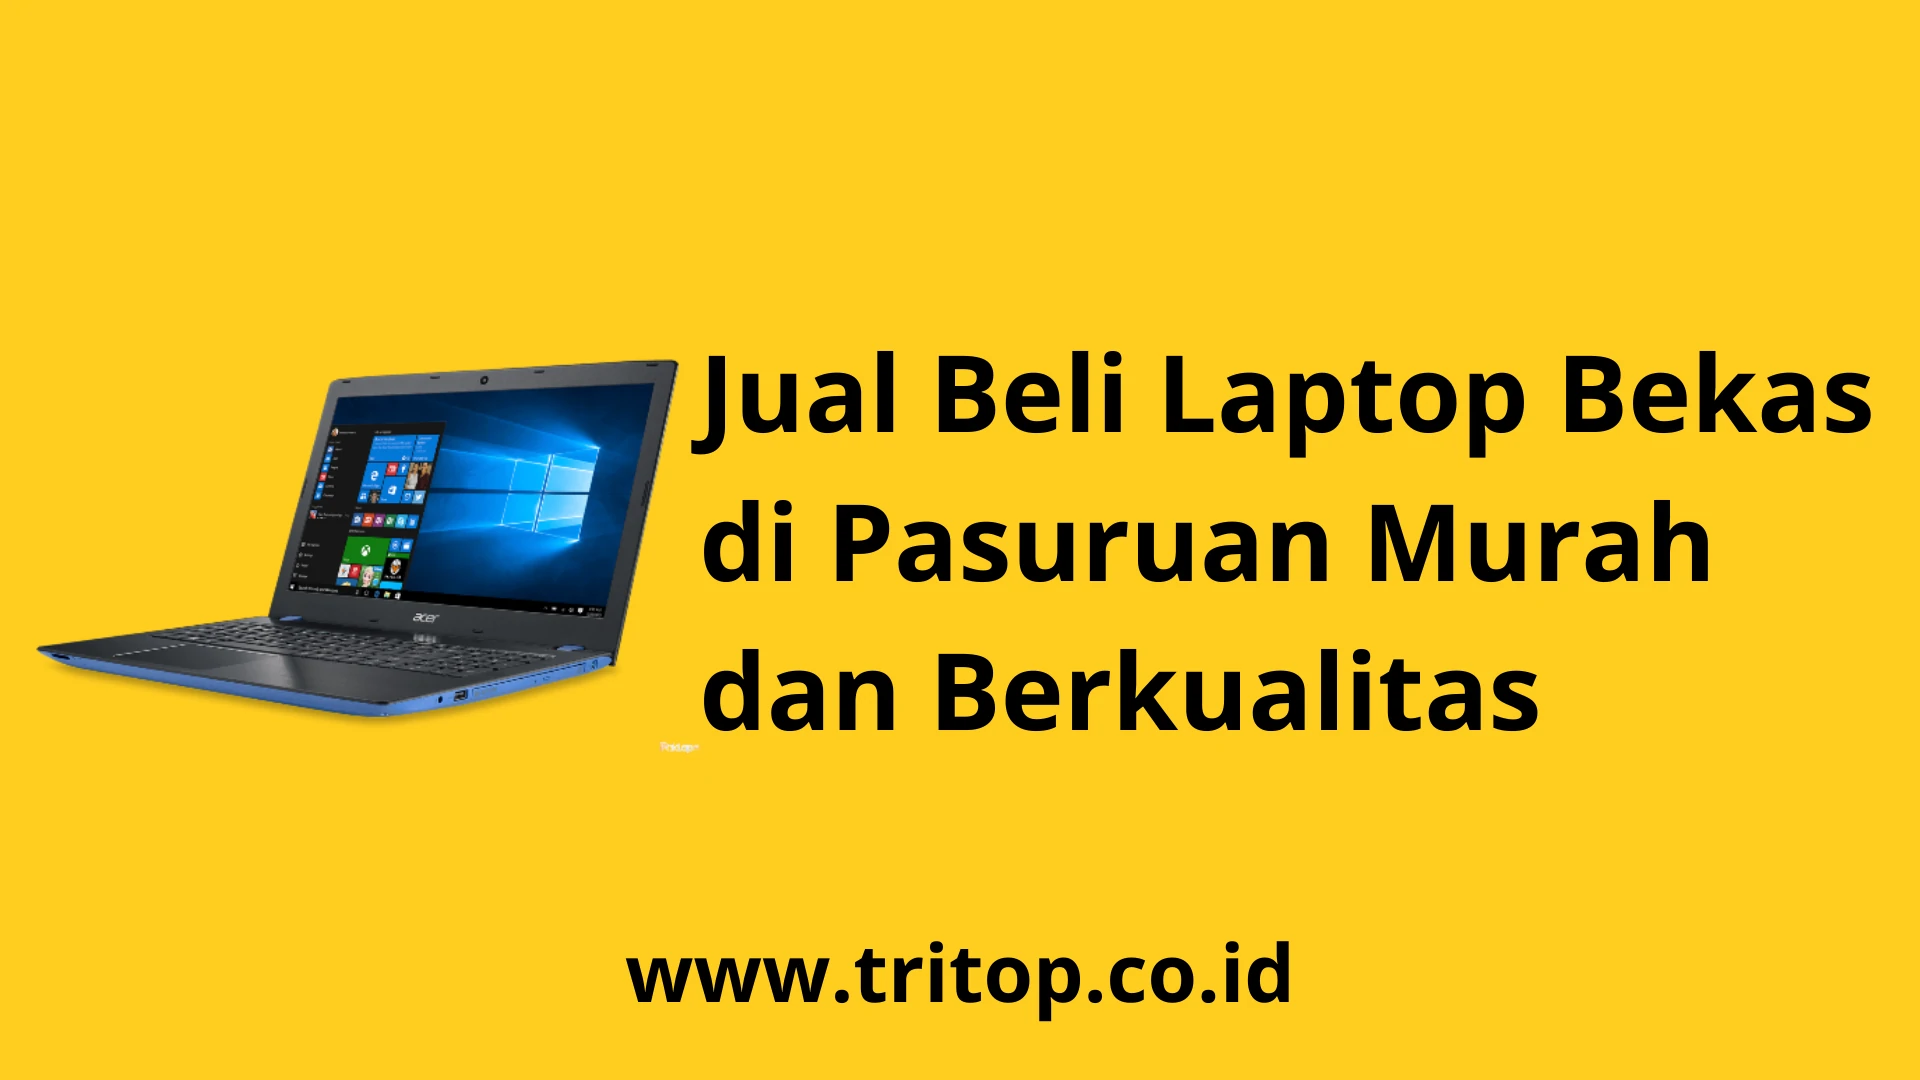 Jual Beli Laptop Bekas Pasuruan www.tritop.co.id